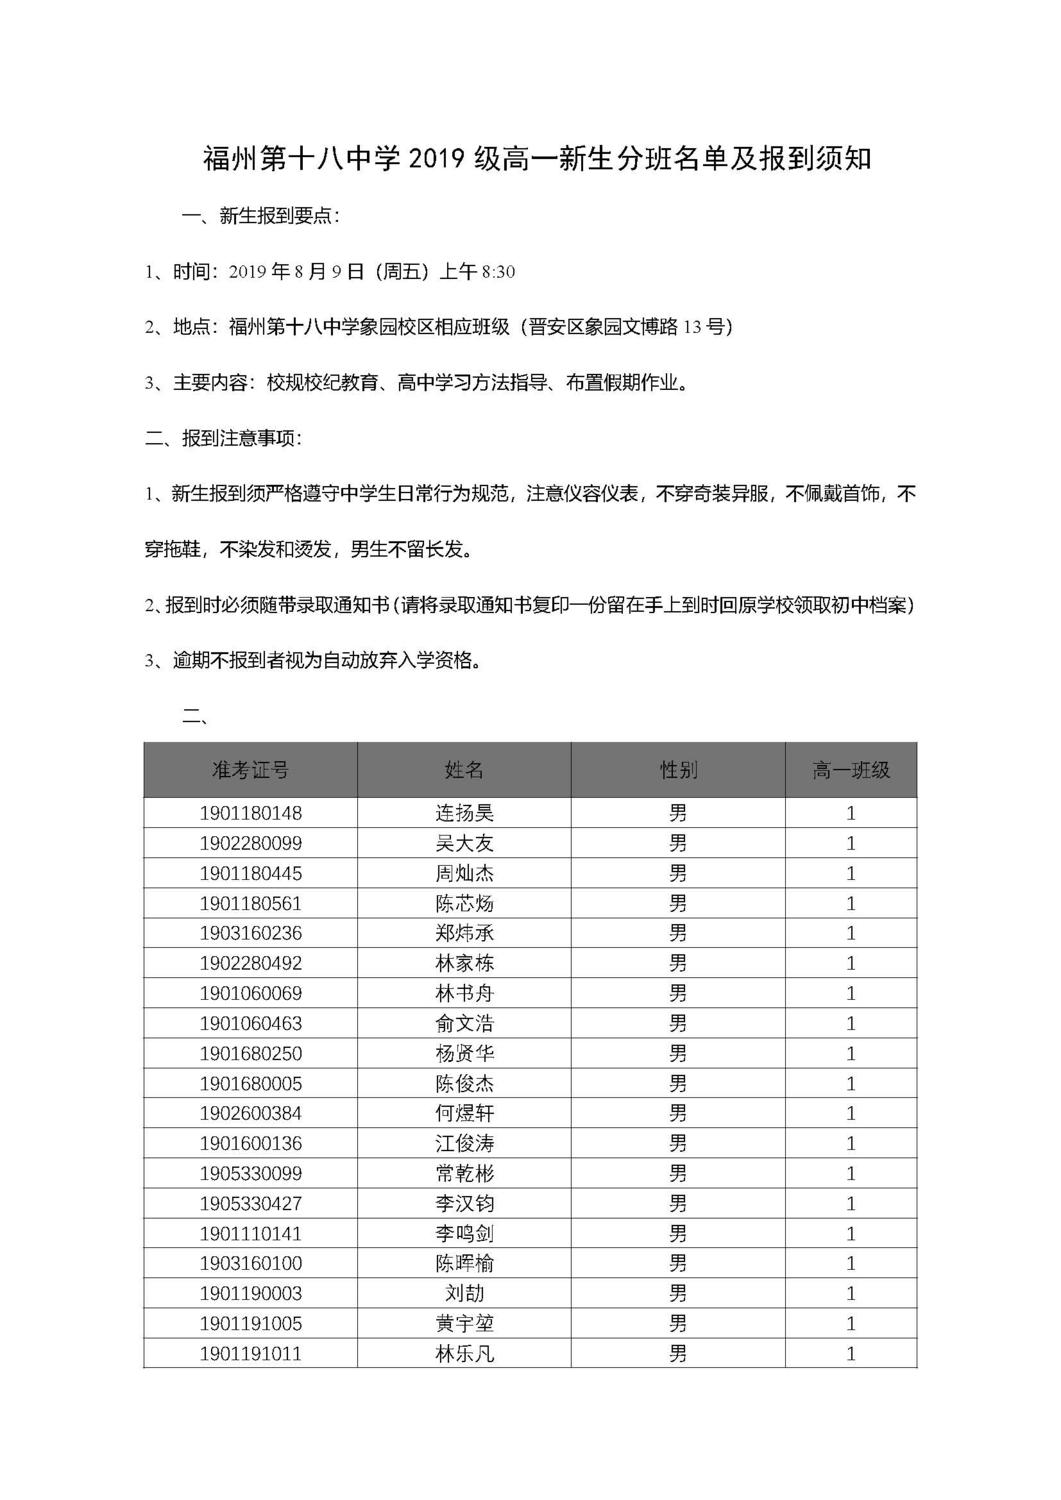 福州第十八中学2019级高一新生分班名单及报到须知_页面_01.jpg